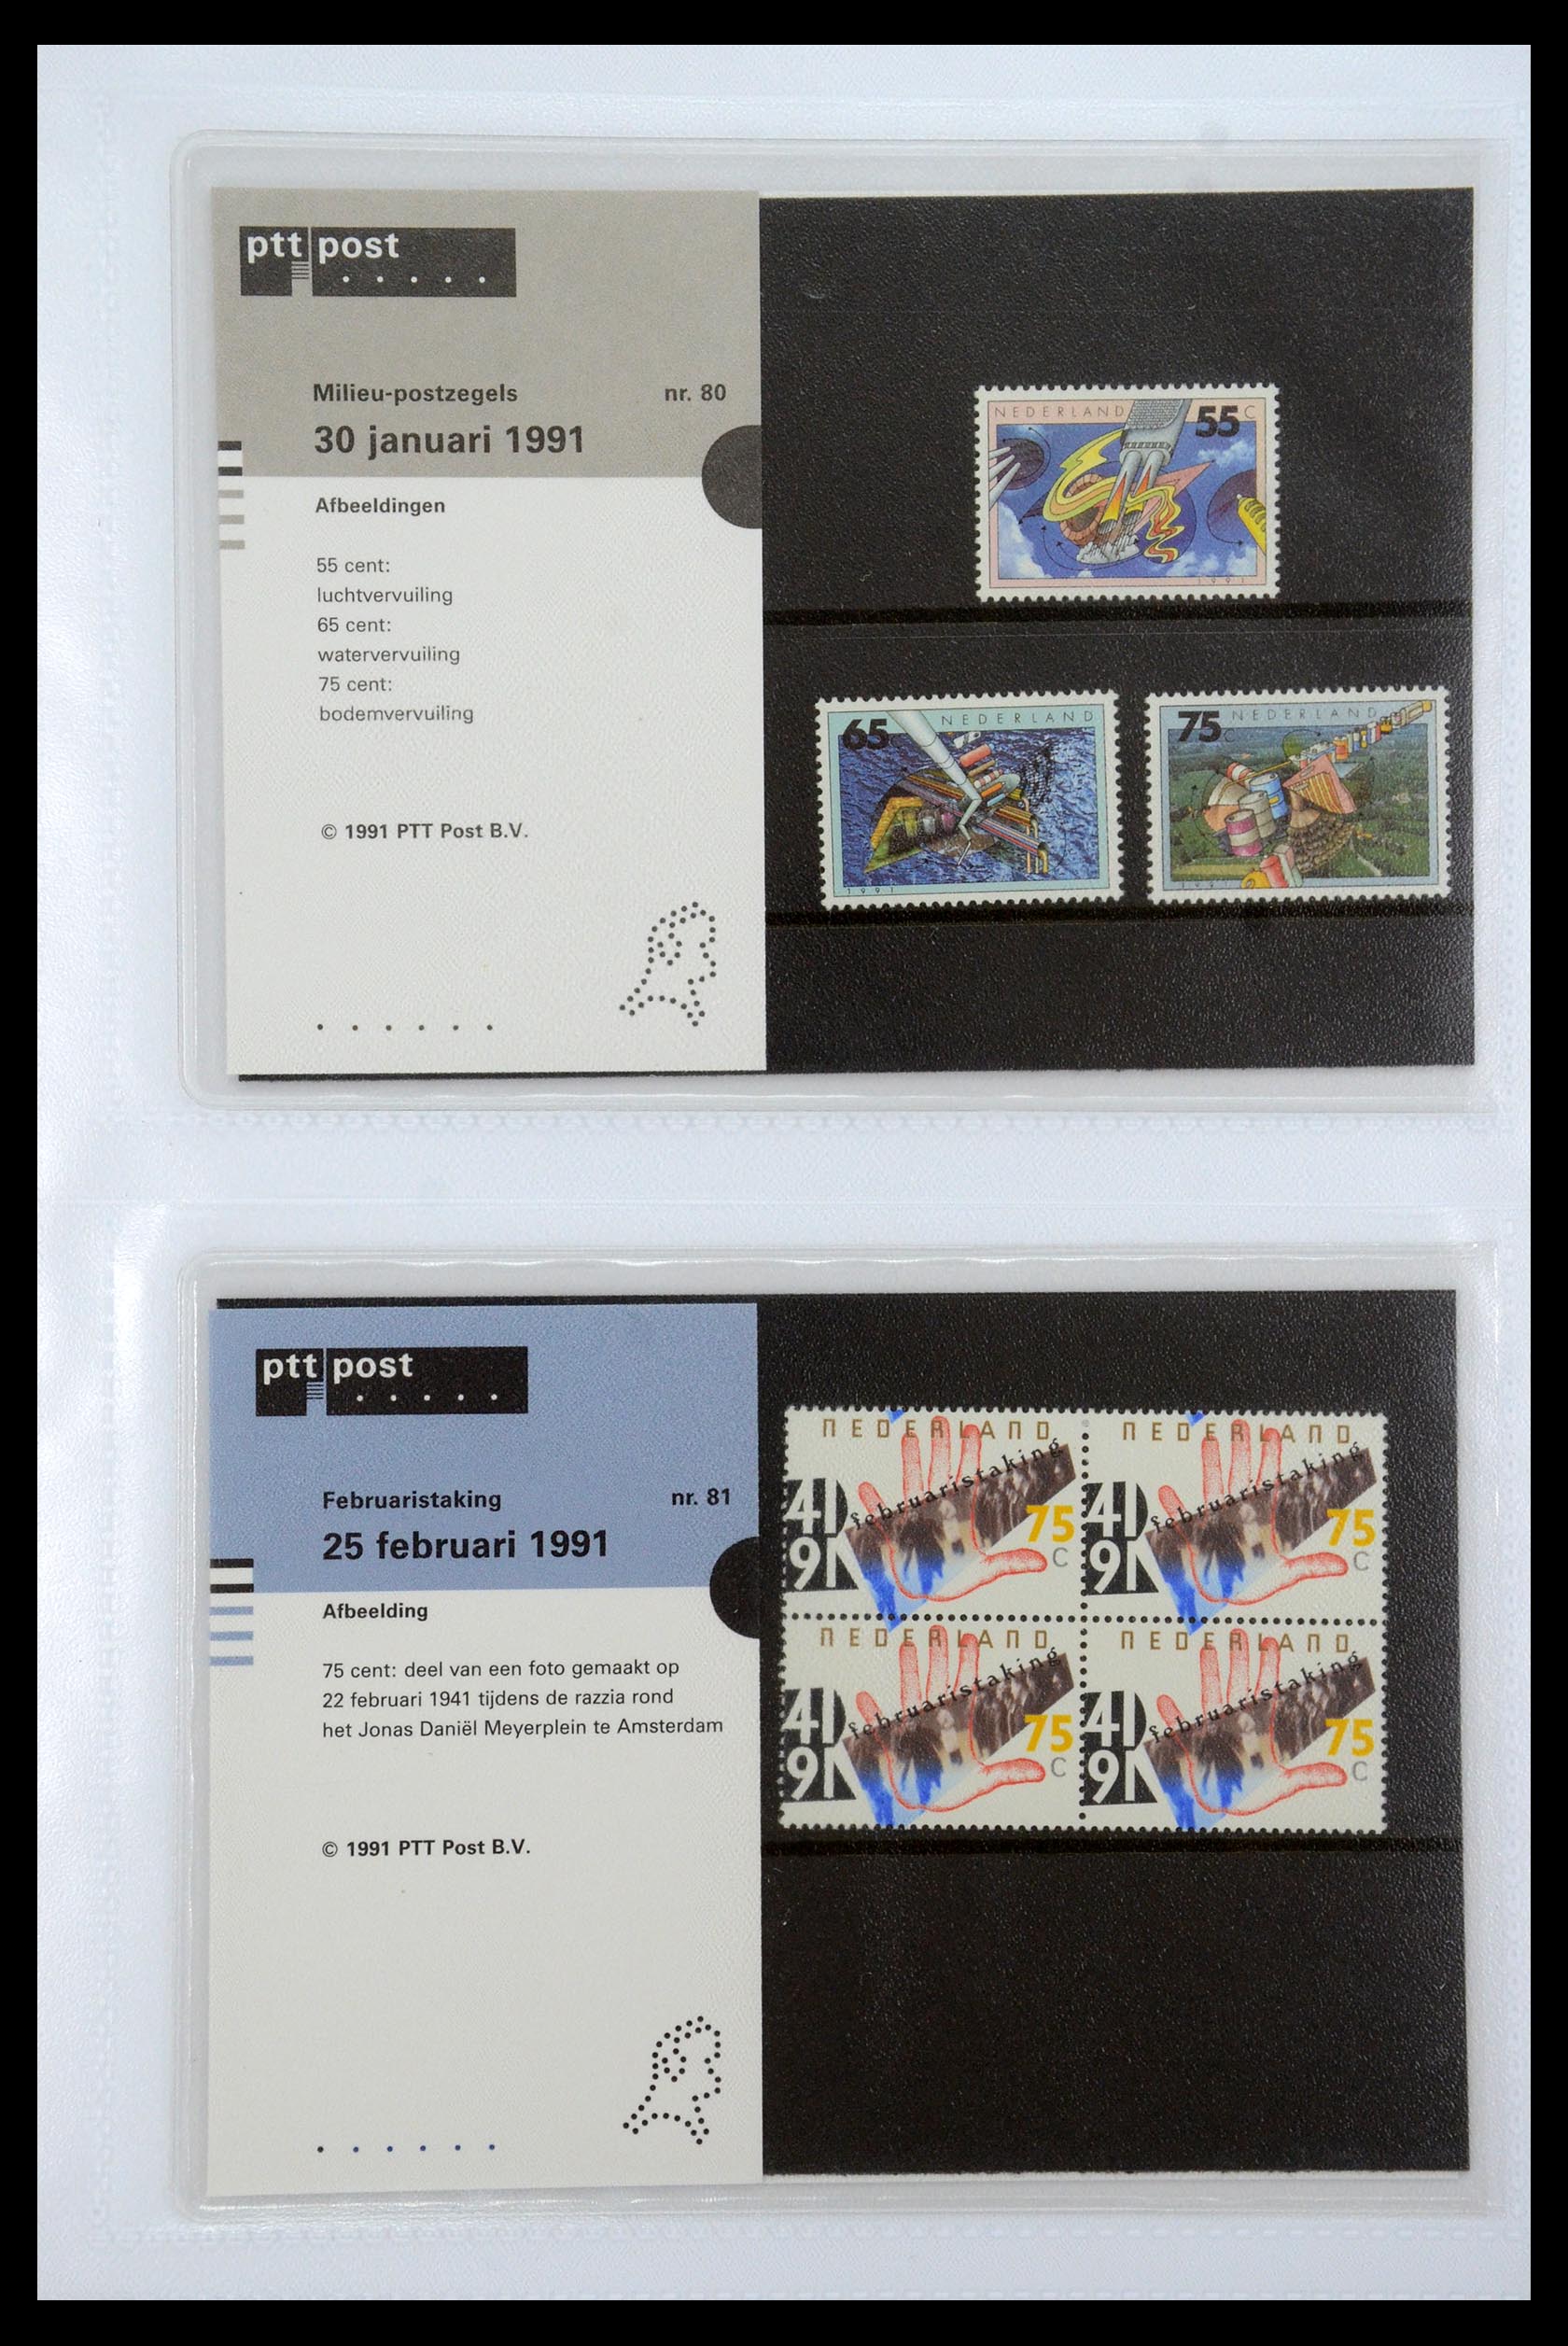 35947 041 - Stamp Collection 35947 Netherlands PTT presentation packs 1982-2019!